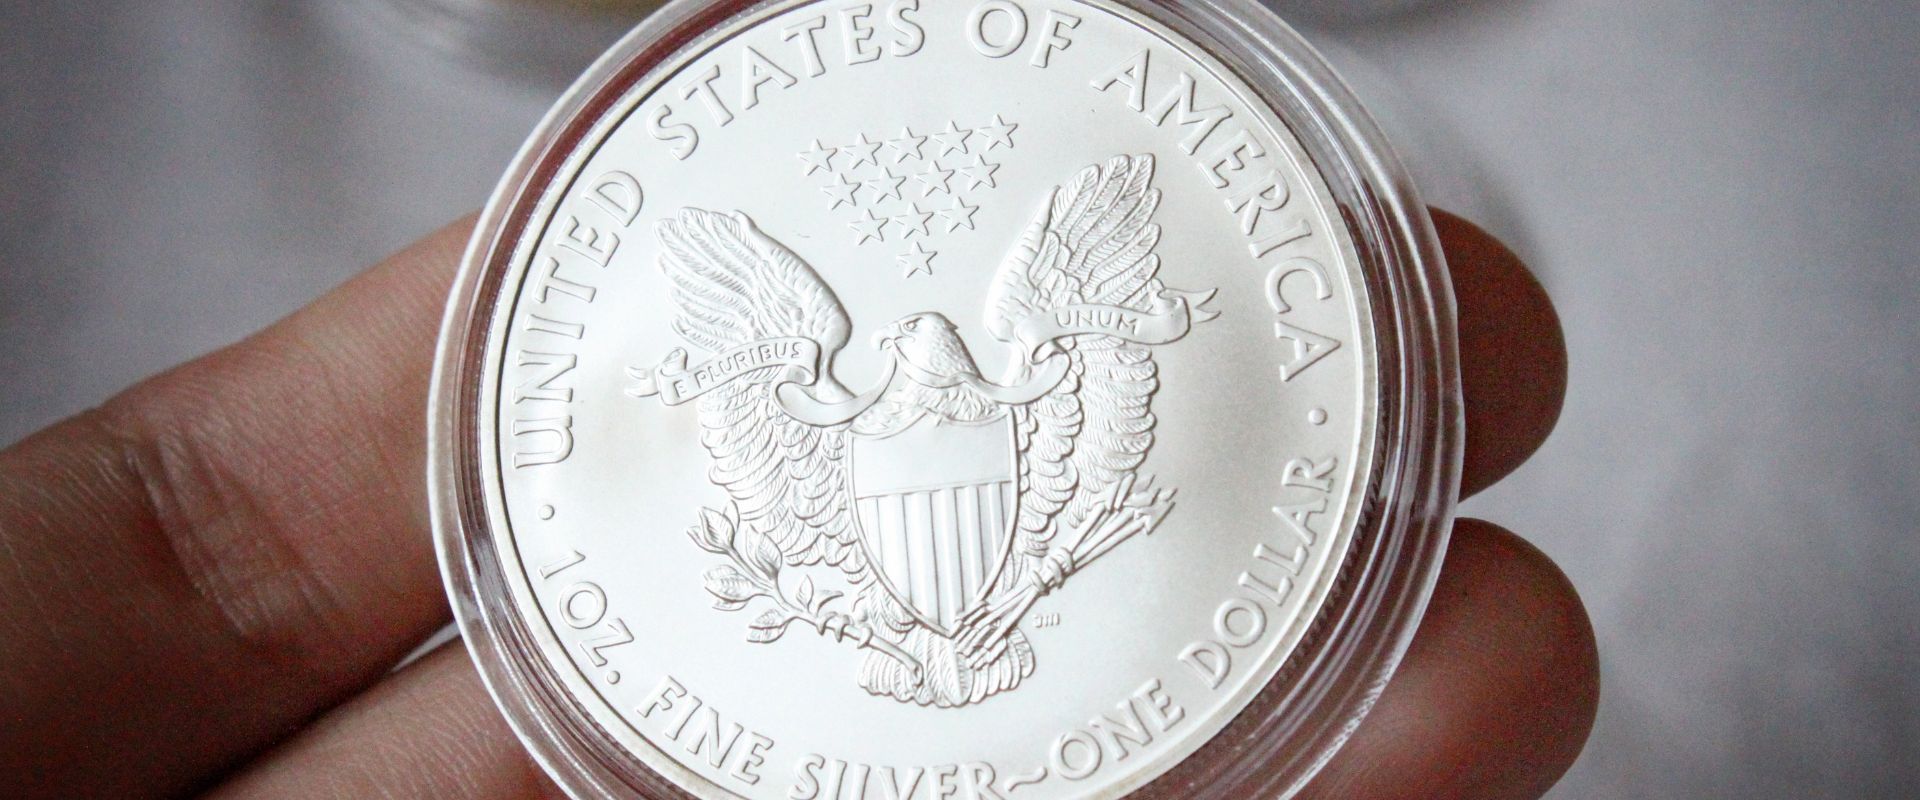 coin collector holding american silver eagle coin